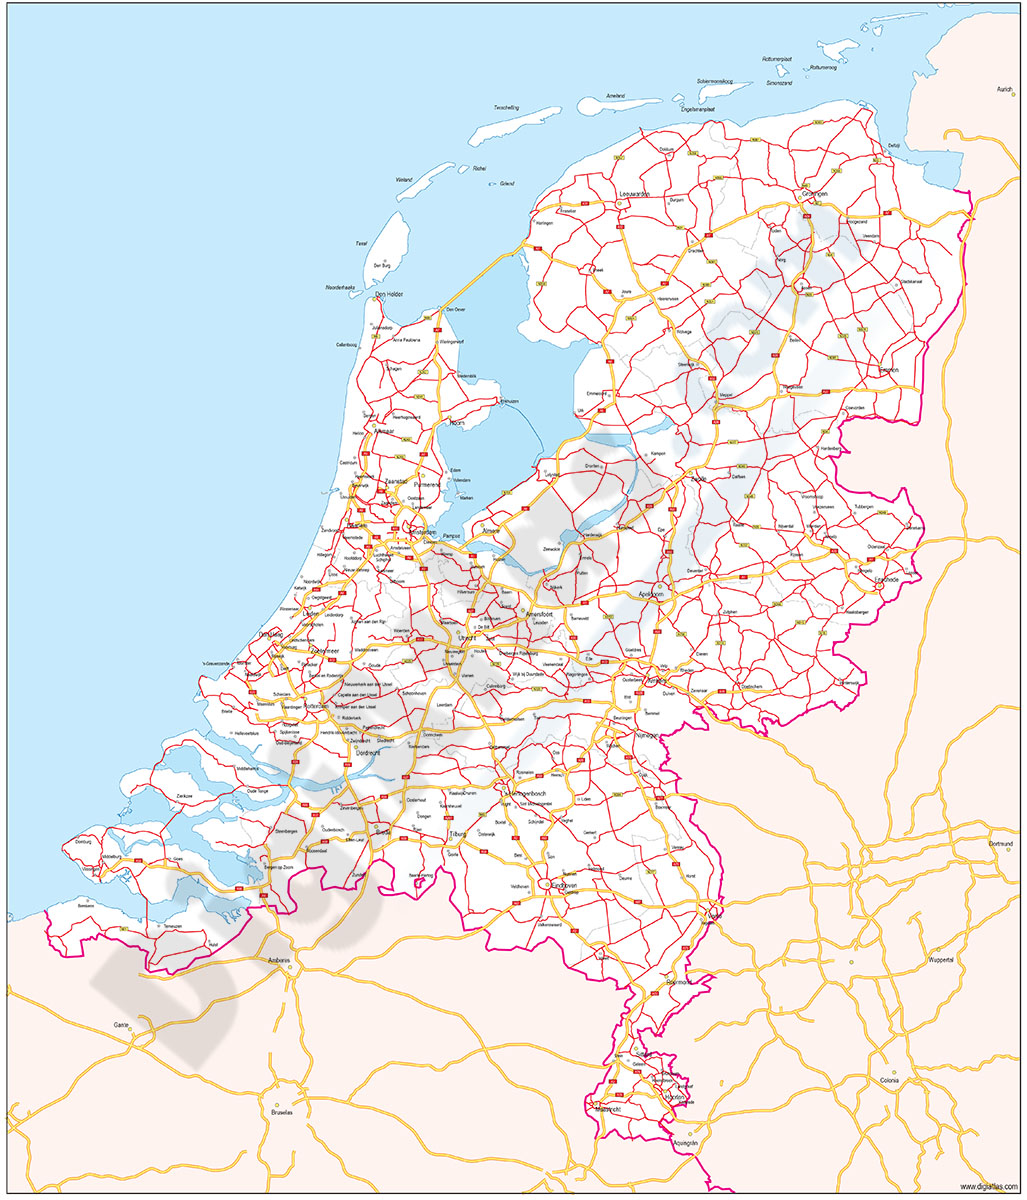 Mapa de Países Bajos con carreteras